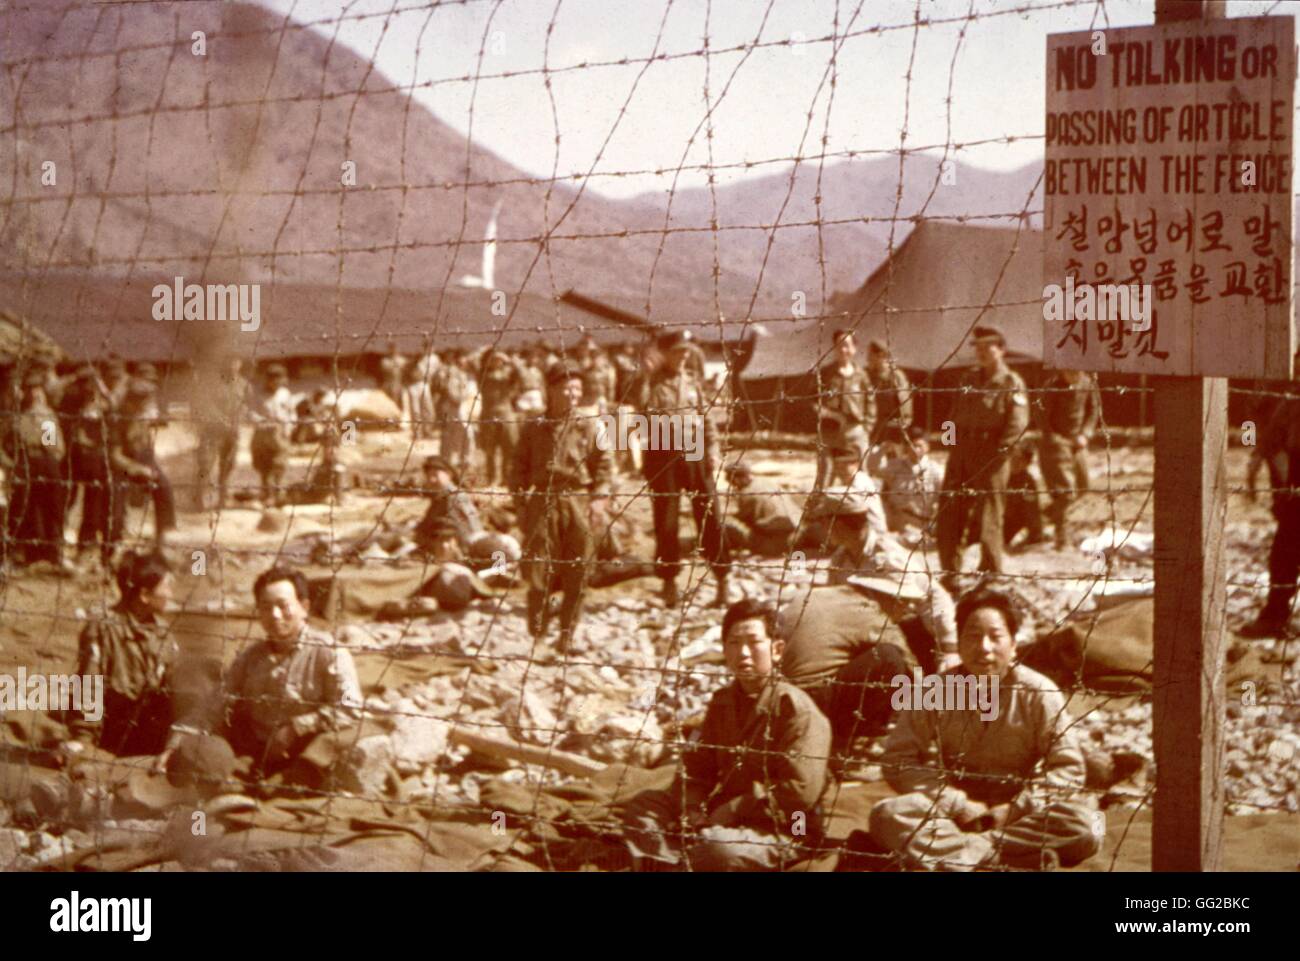 Kommunistische chinesischen Gefangenen in einem Gefangenenlager UN März 1952 Koreakrieg U.S. Signal Corps Foto Stockfoto